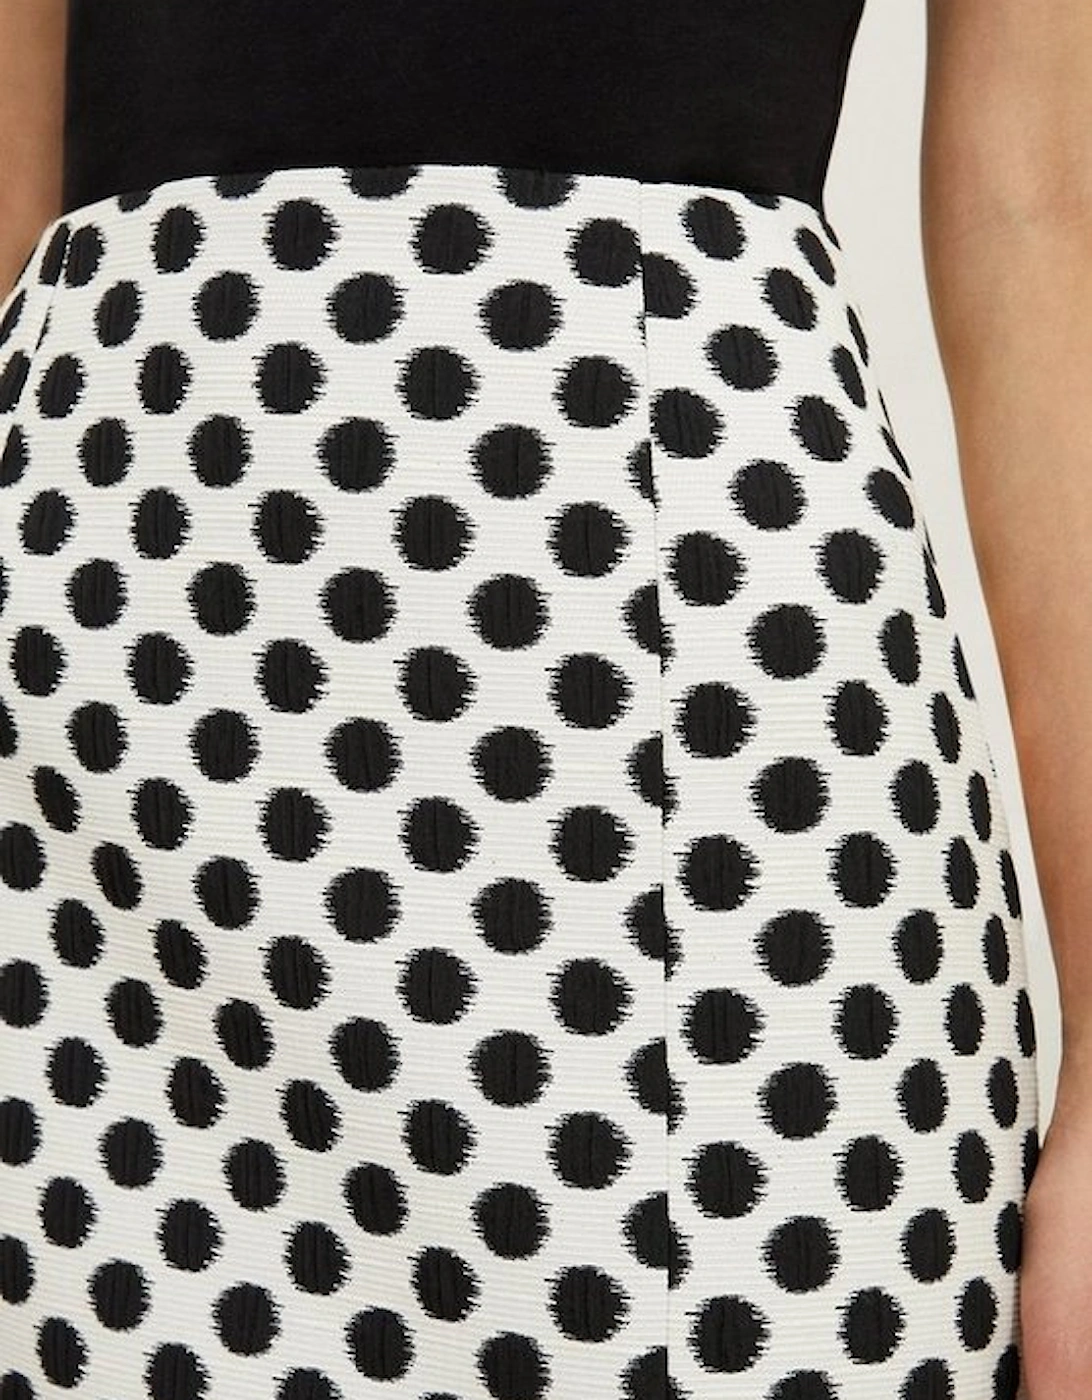 Tailored Jacquard Spot Pencil Midi Skirt